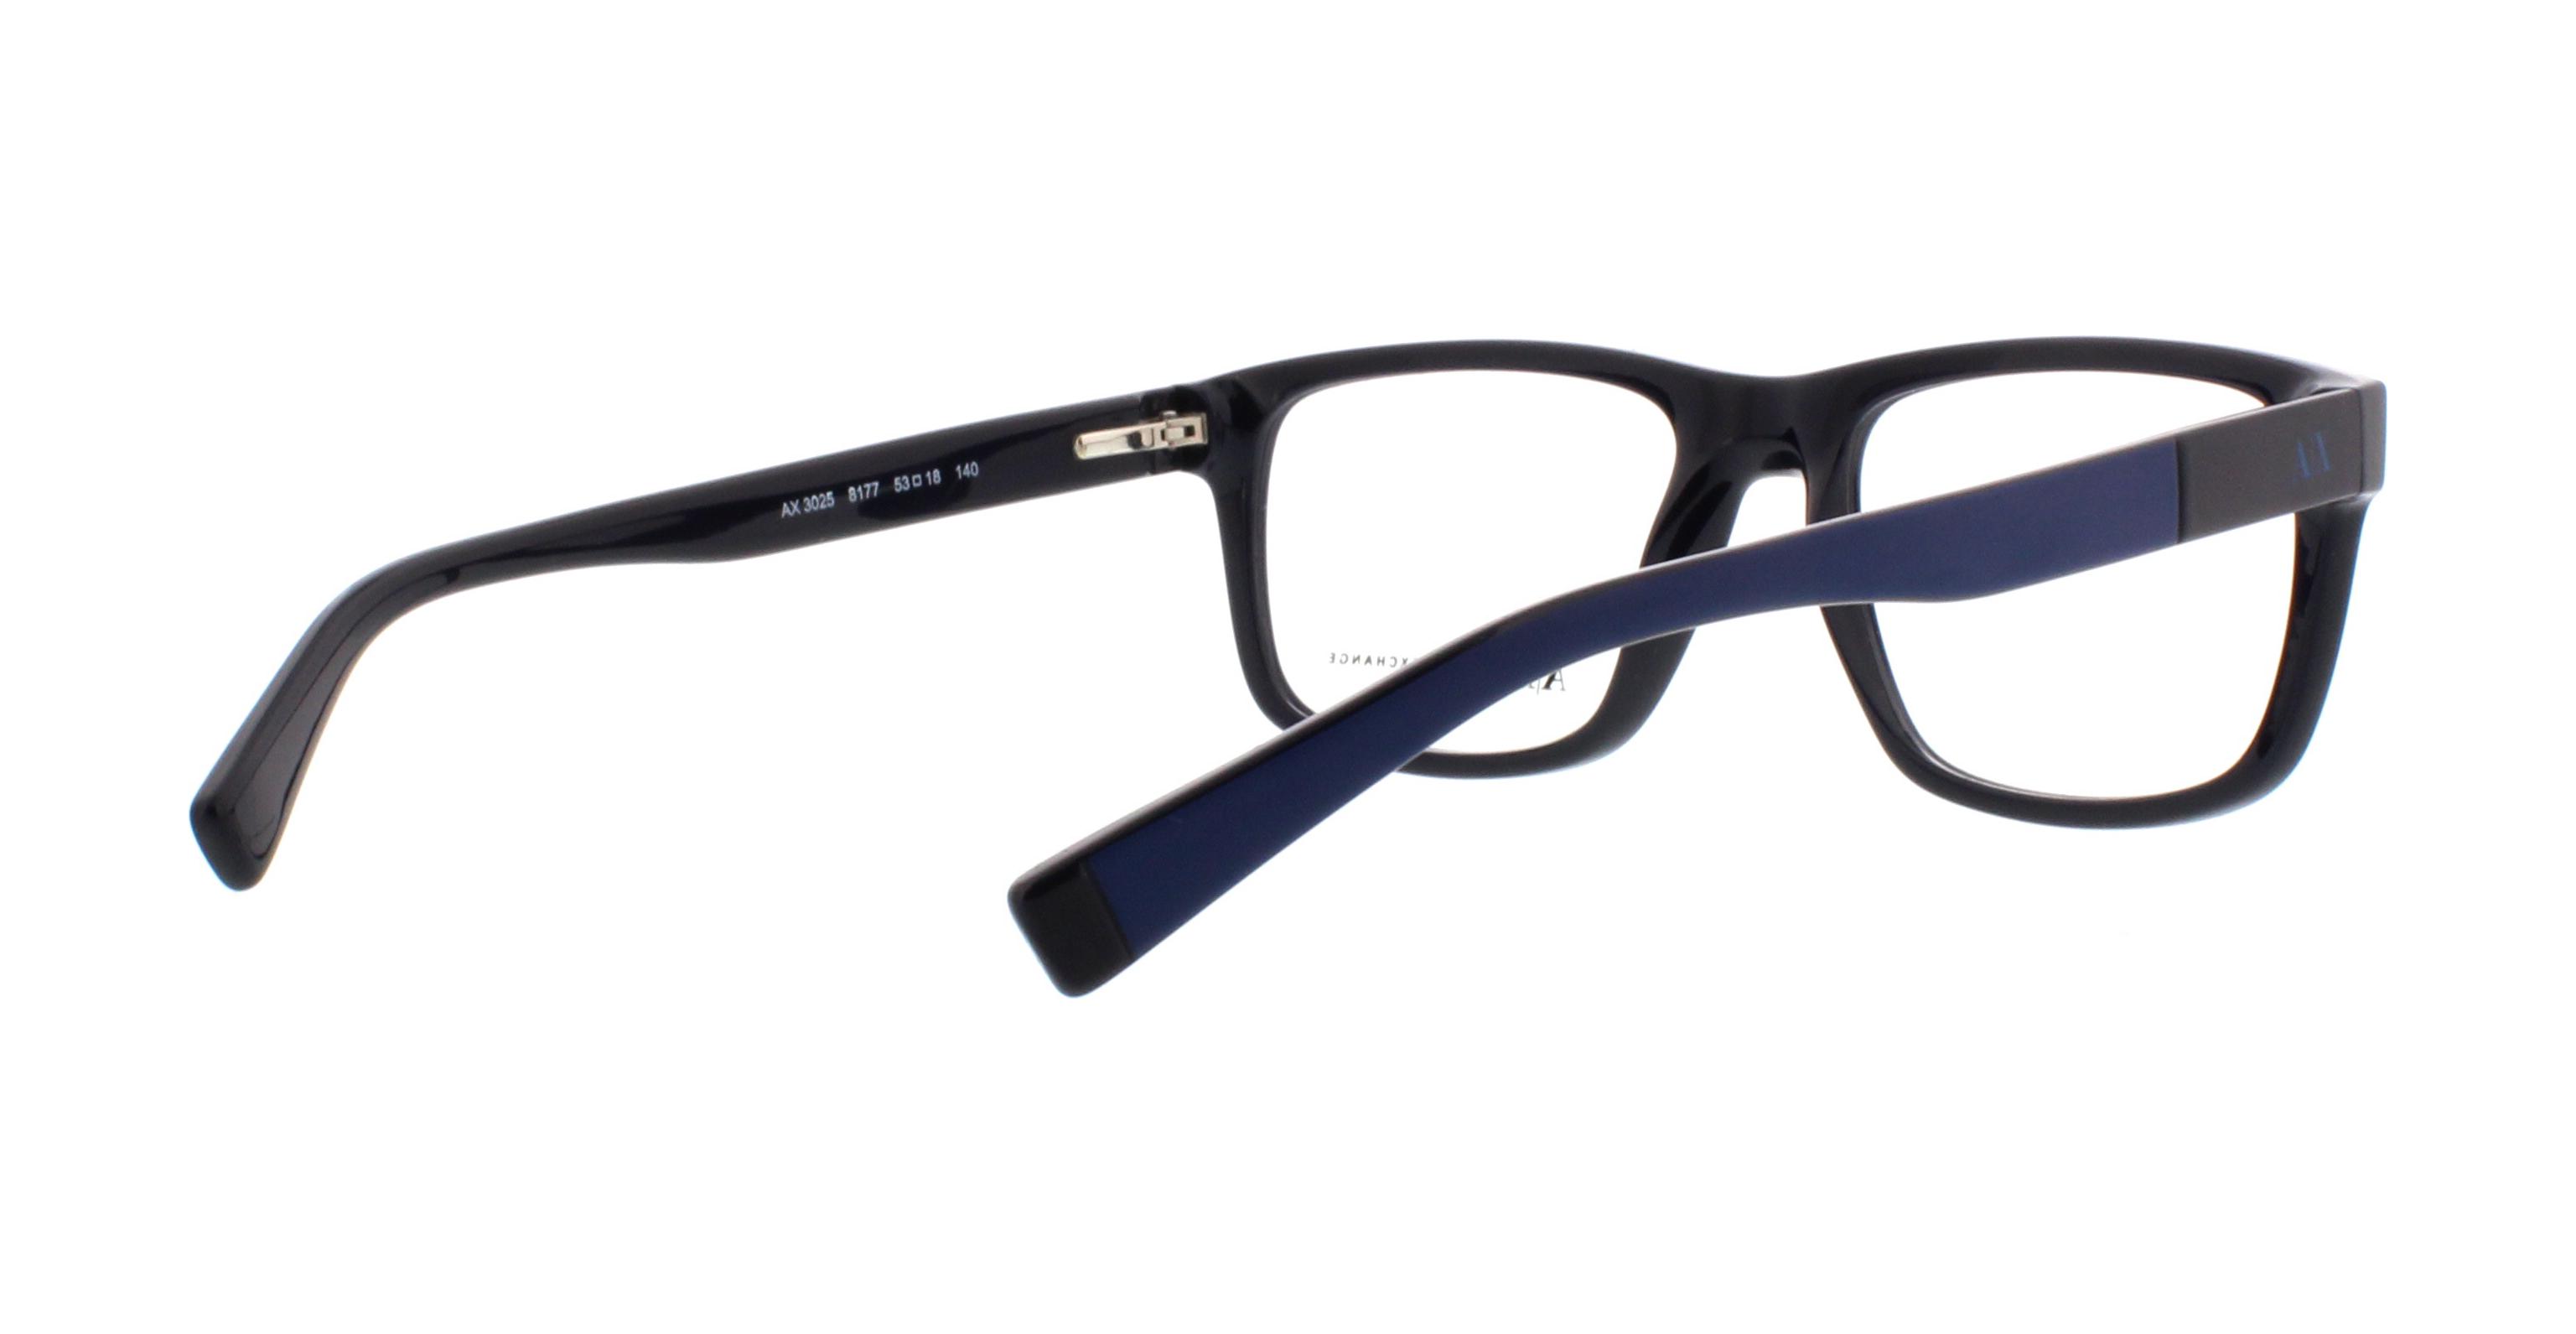 Outlet. Armani AX3025 Designer Exchange Frames Eyeglasses